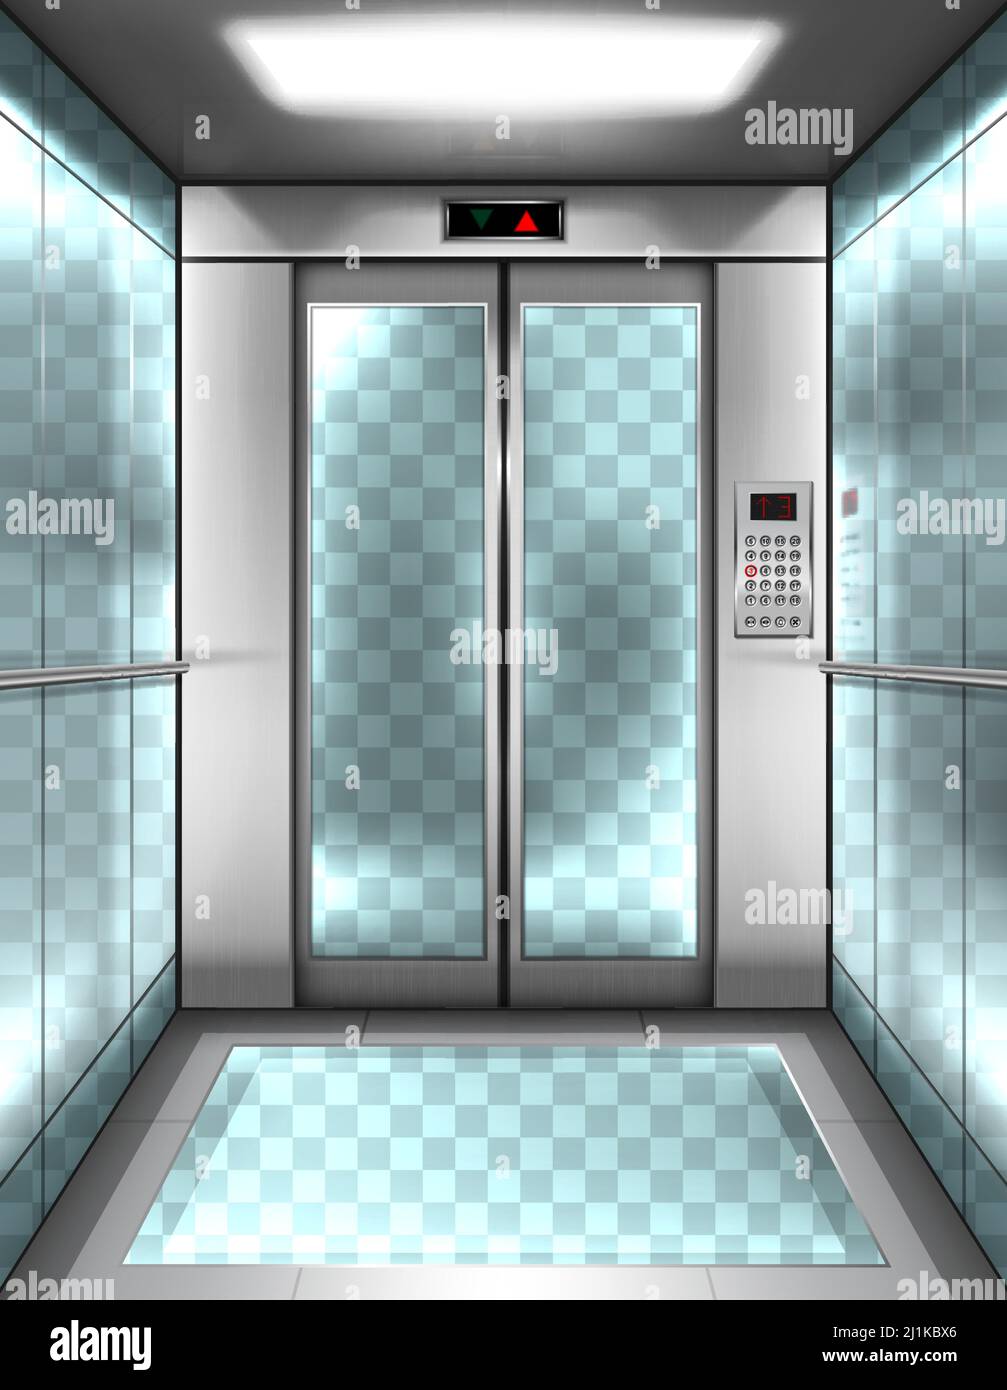 Leere Glas-Fahrstuhlkabine mit transparenten Wänden, Boden und geschlossenen Türen. Vektor realistische Innenraum des Personenlifts mit Tasten Panel und digital Stock Vektor